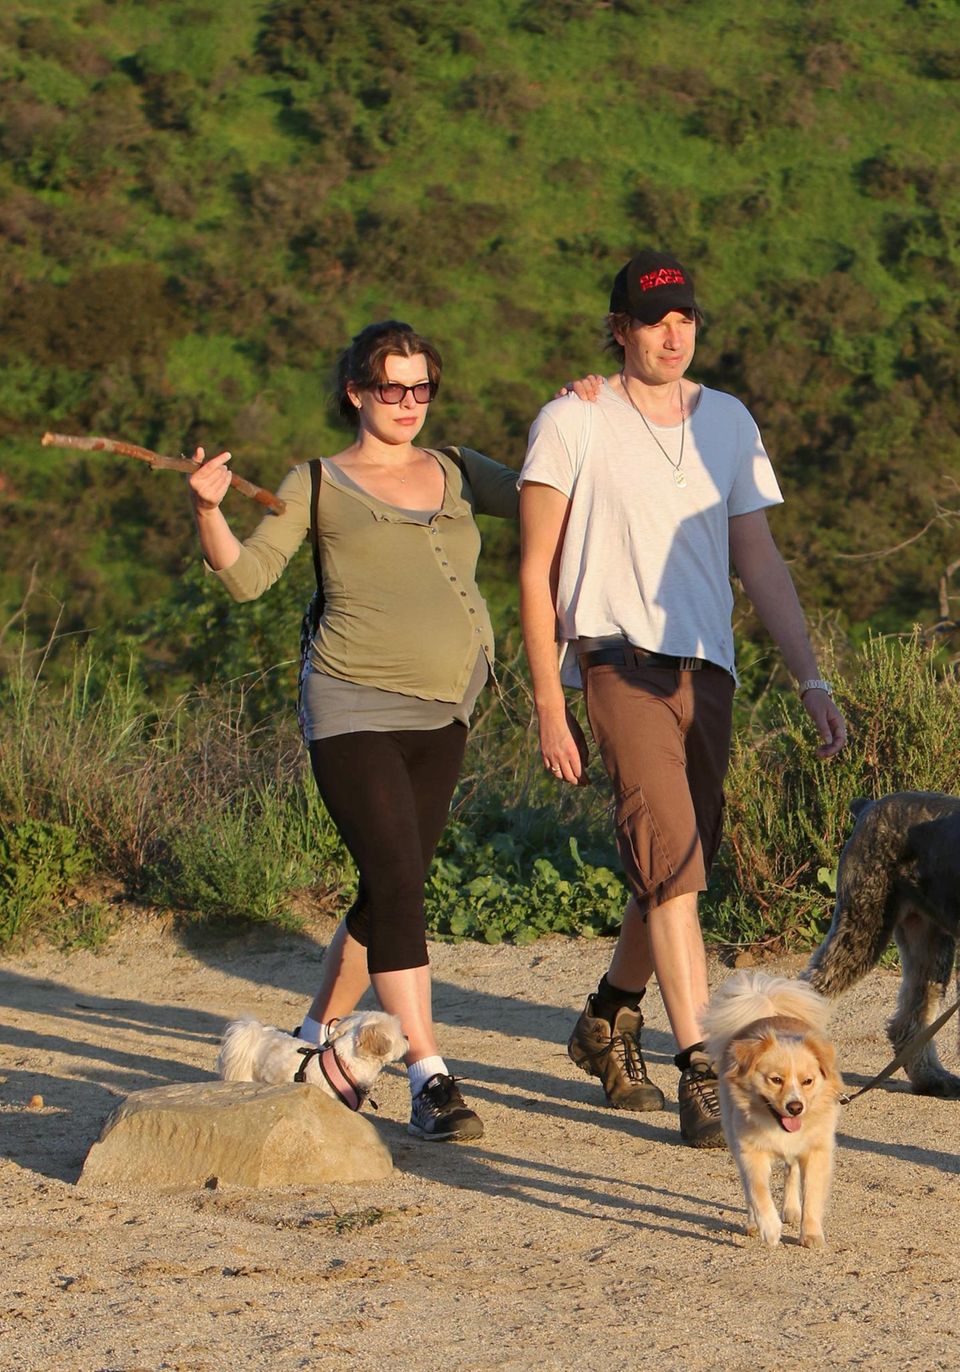 5. März 2015: Bald ist es soweit! Die hochschwangere Milla Jovovich und ihr Ehemann Paul W. S. Anderson gehen mit ihren Hunden wandern.